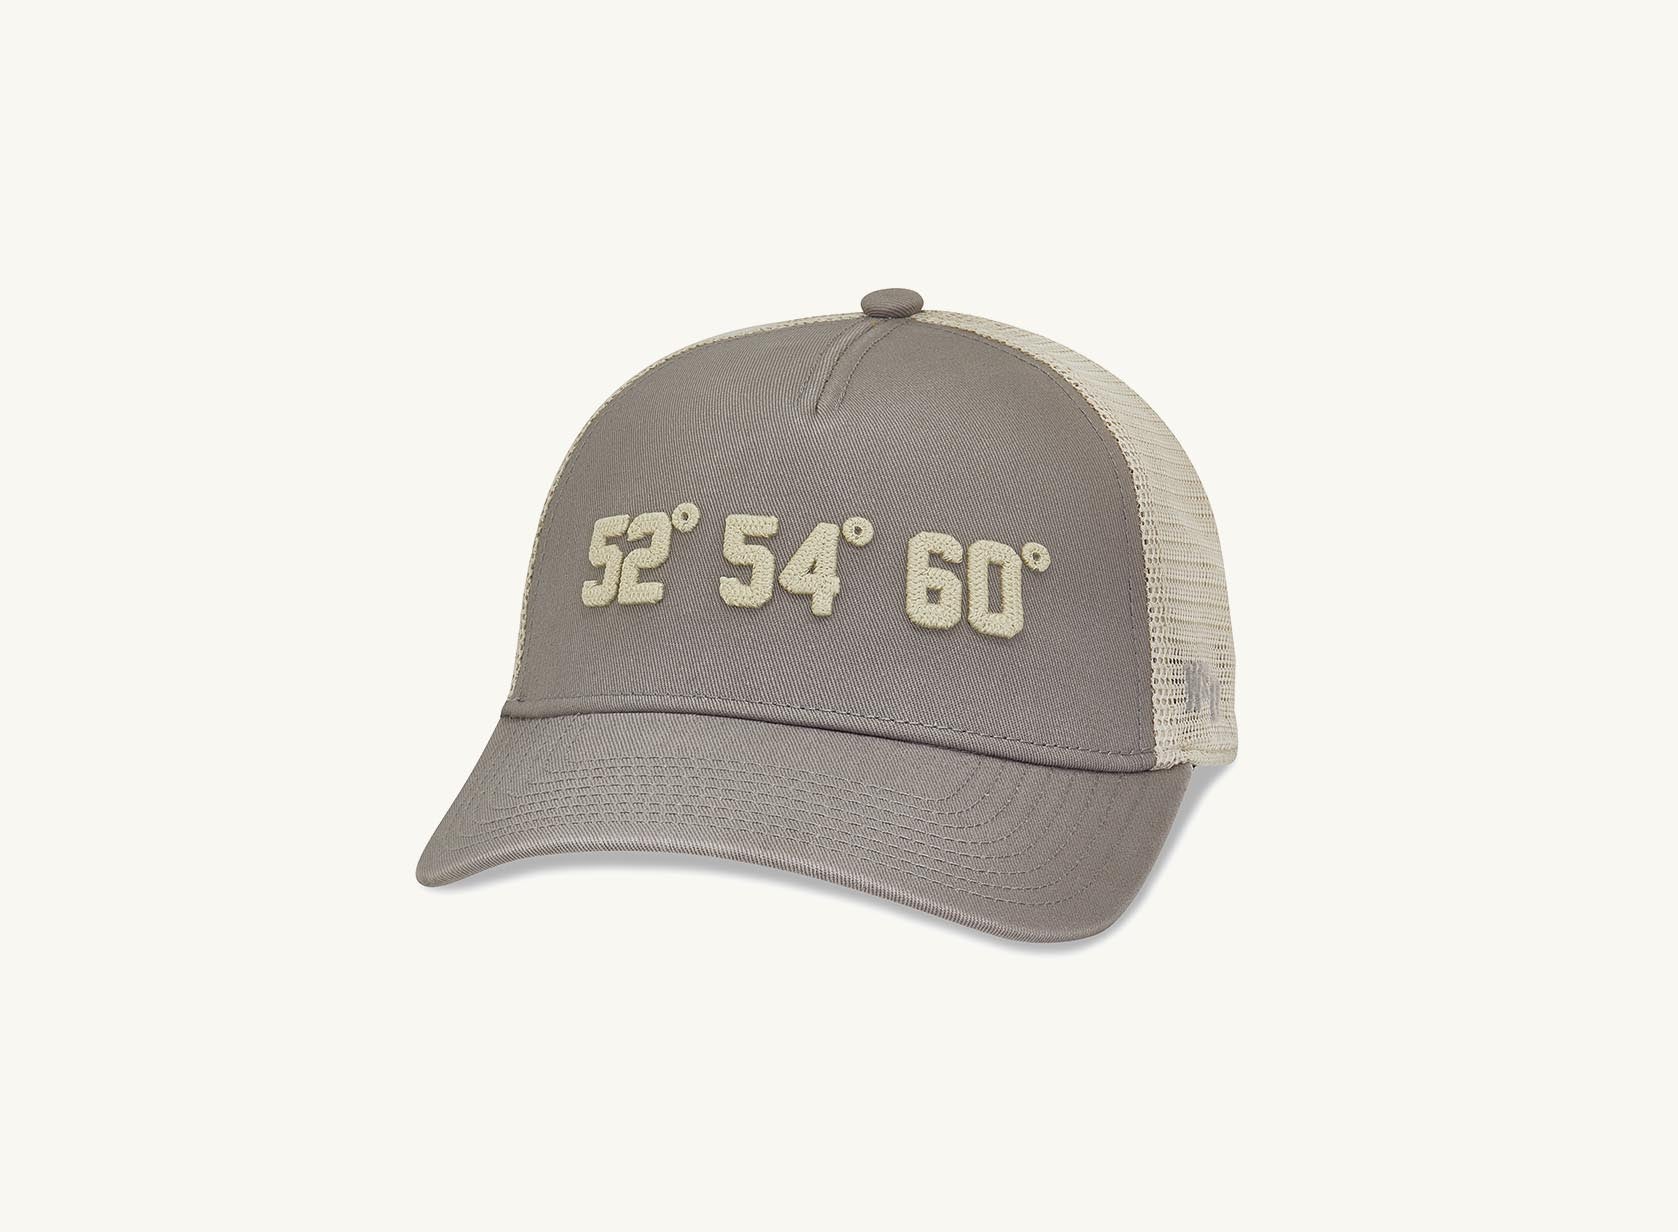 grey 52, 54,60 palmer golf hat